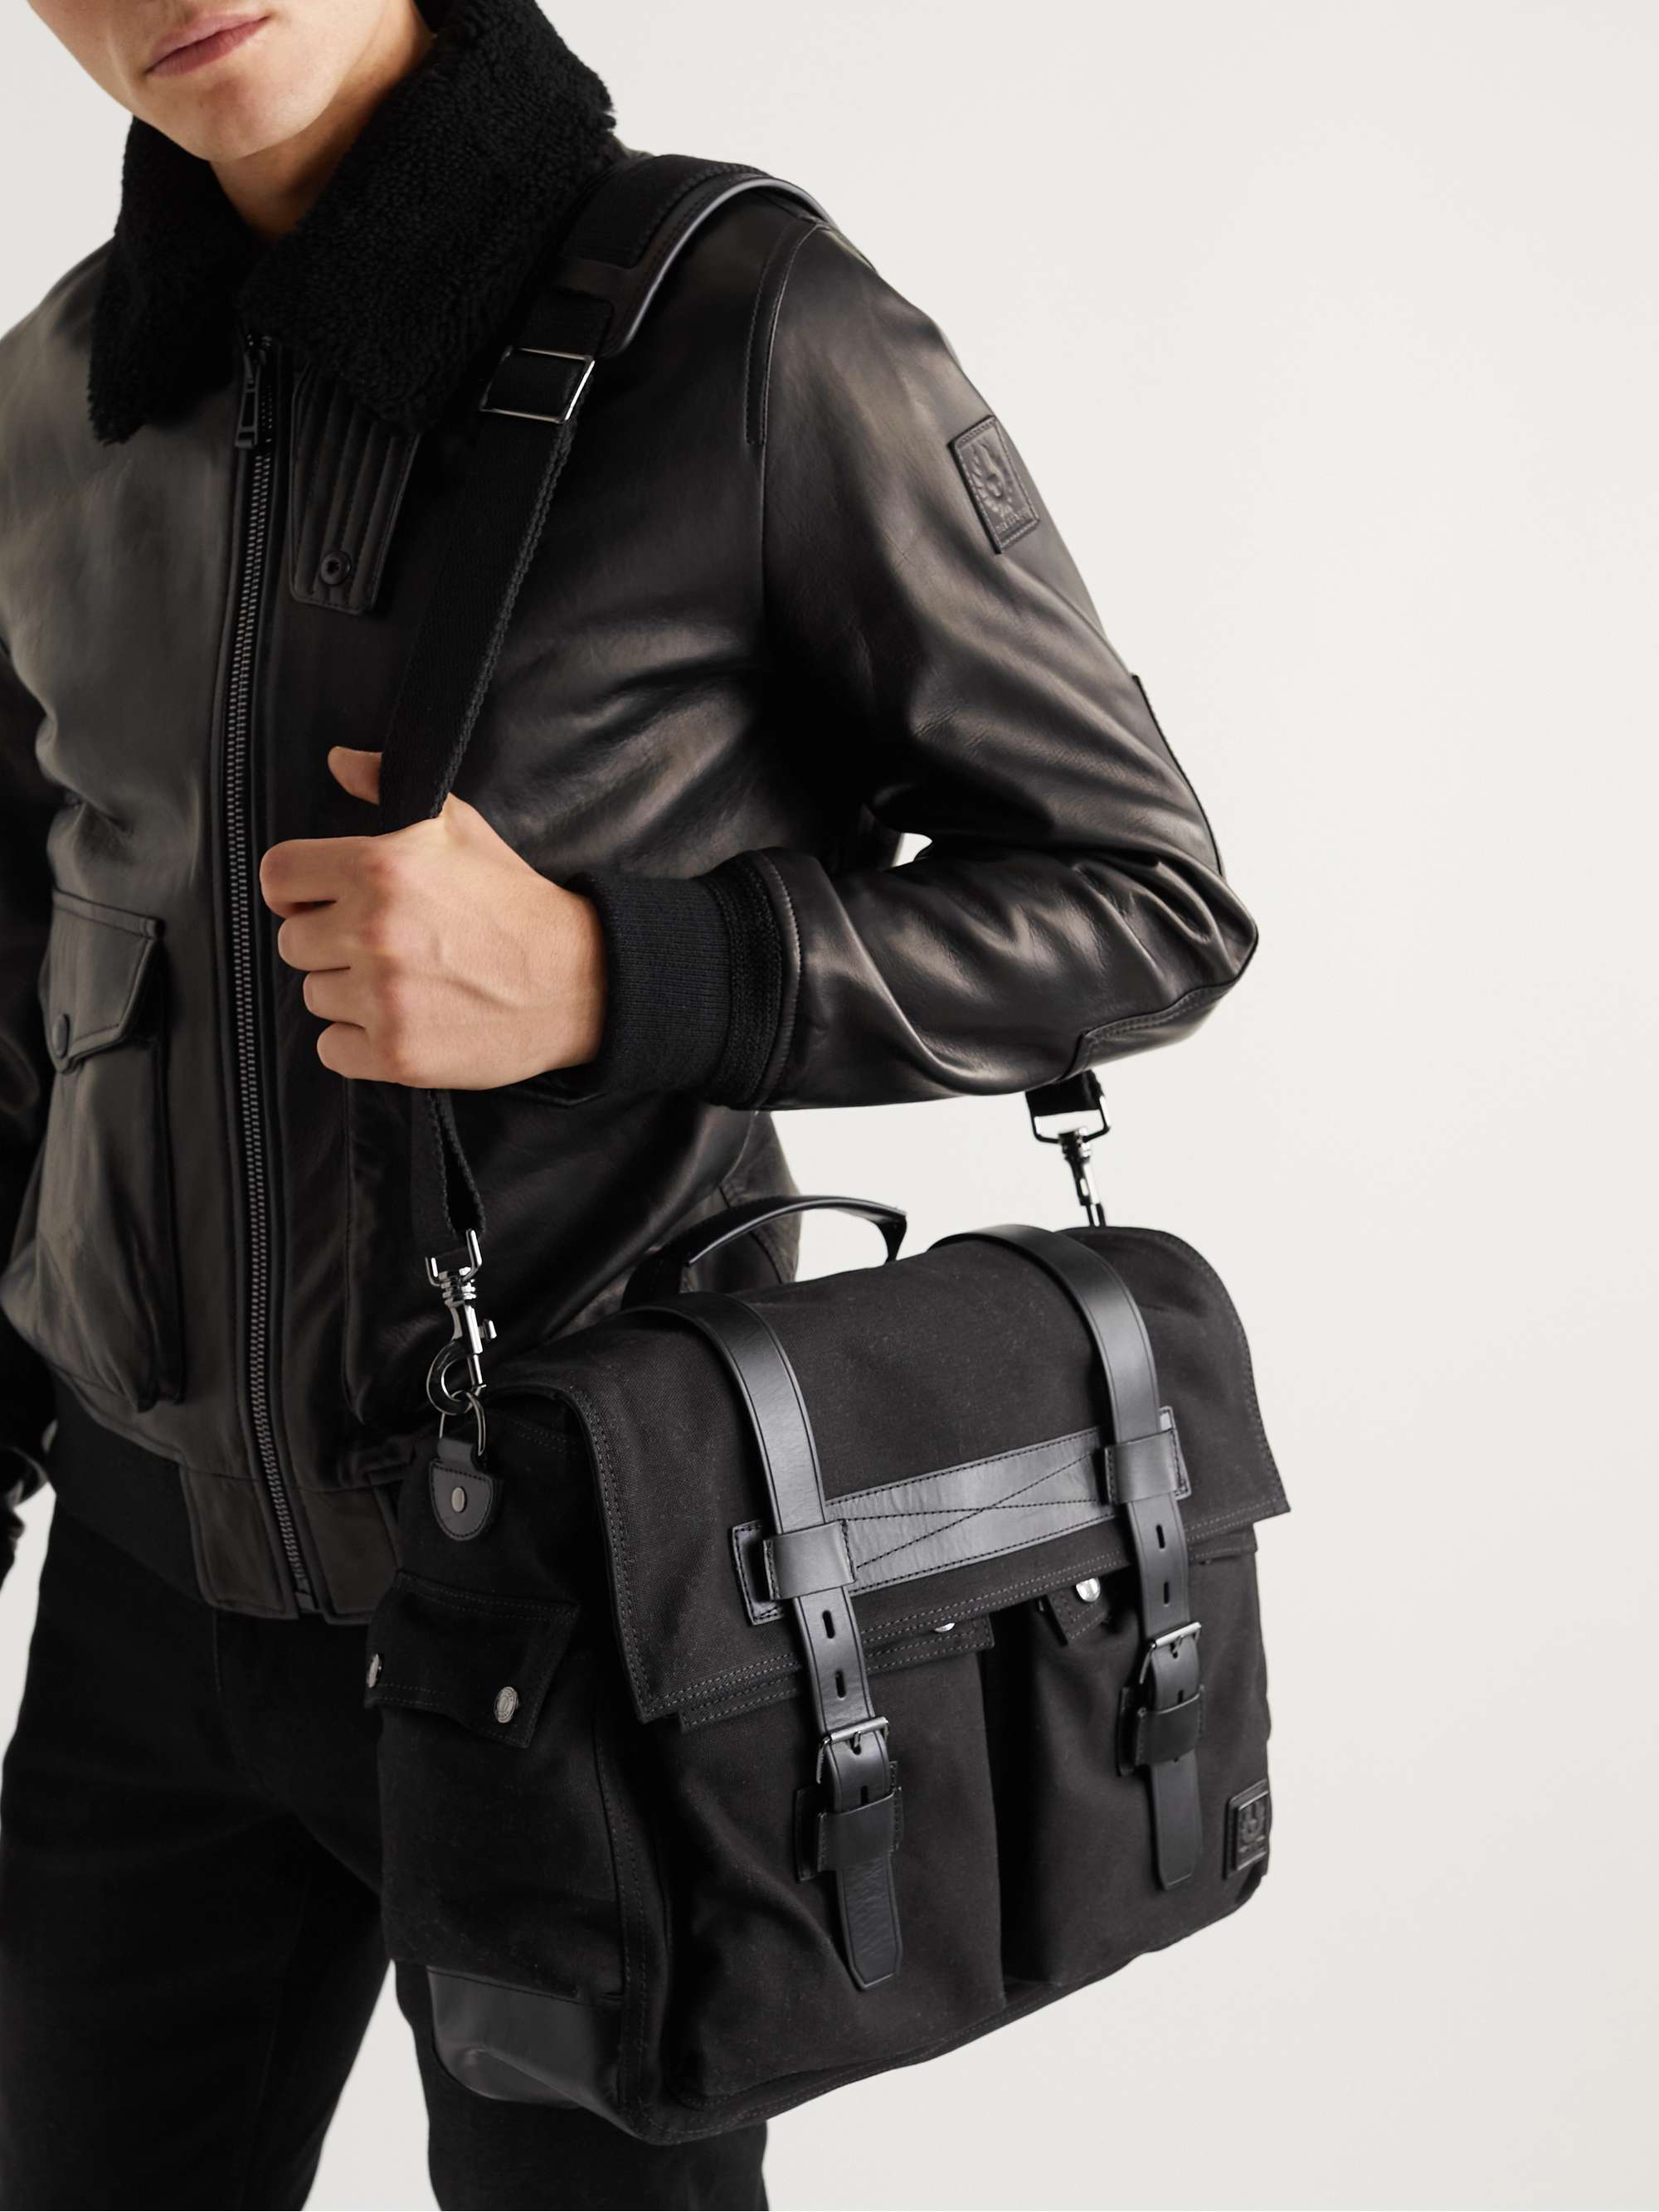 BELSTAFF Leather Messenger Bag